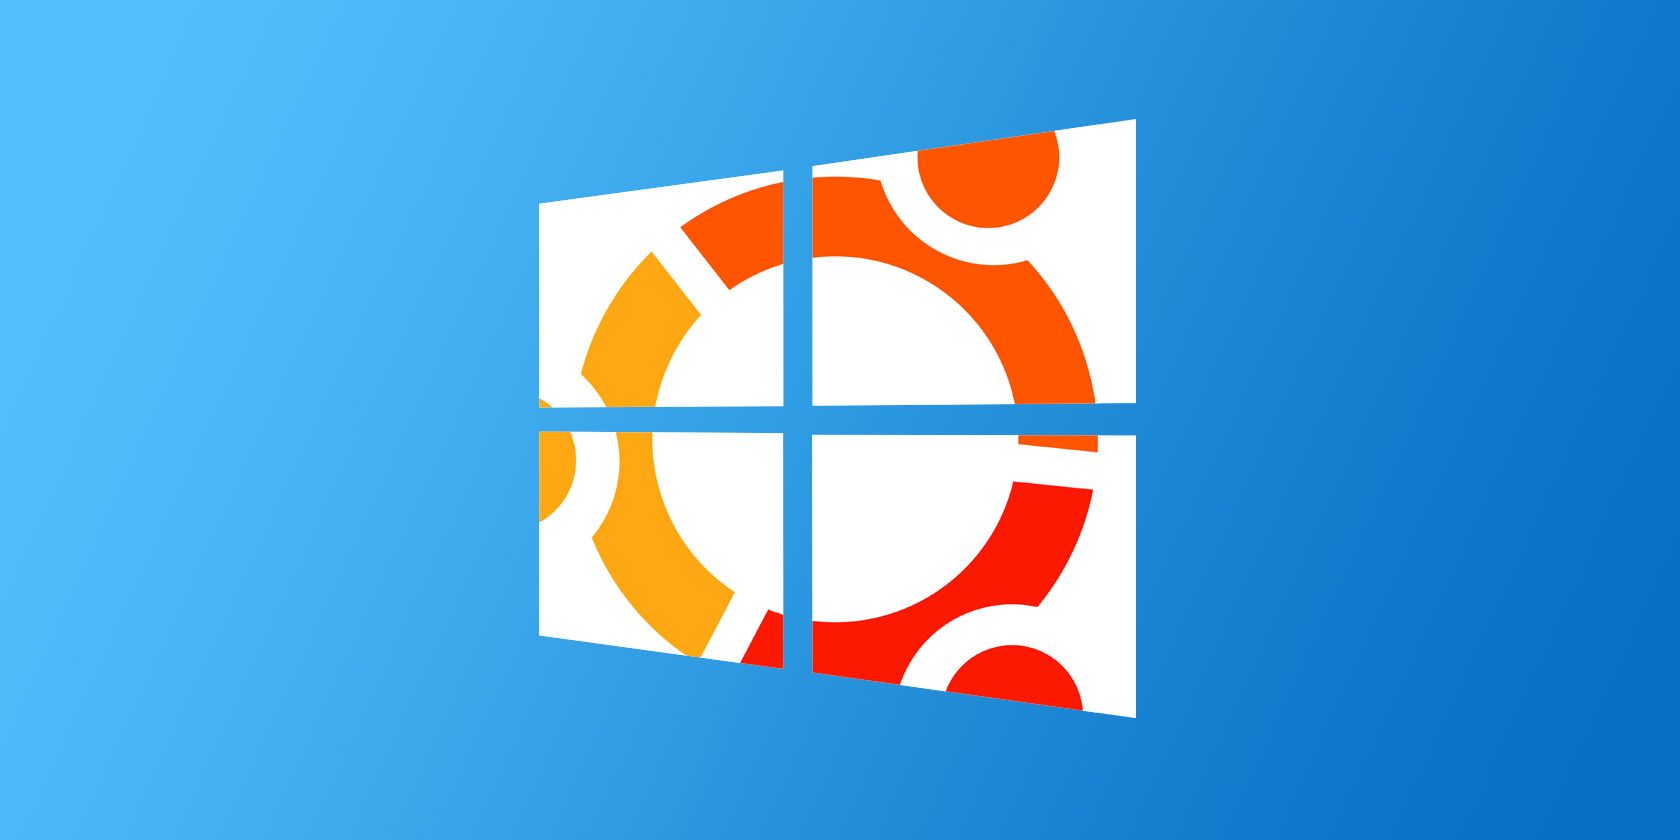 install ubuntu on windows 10